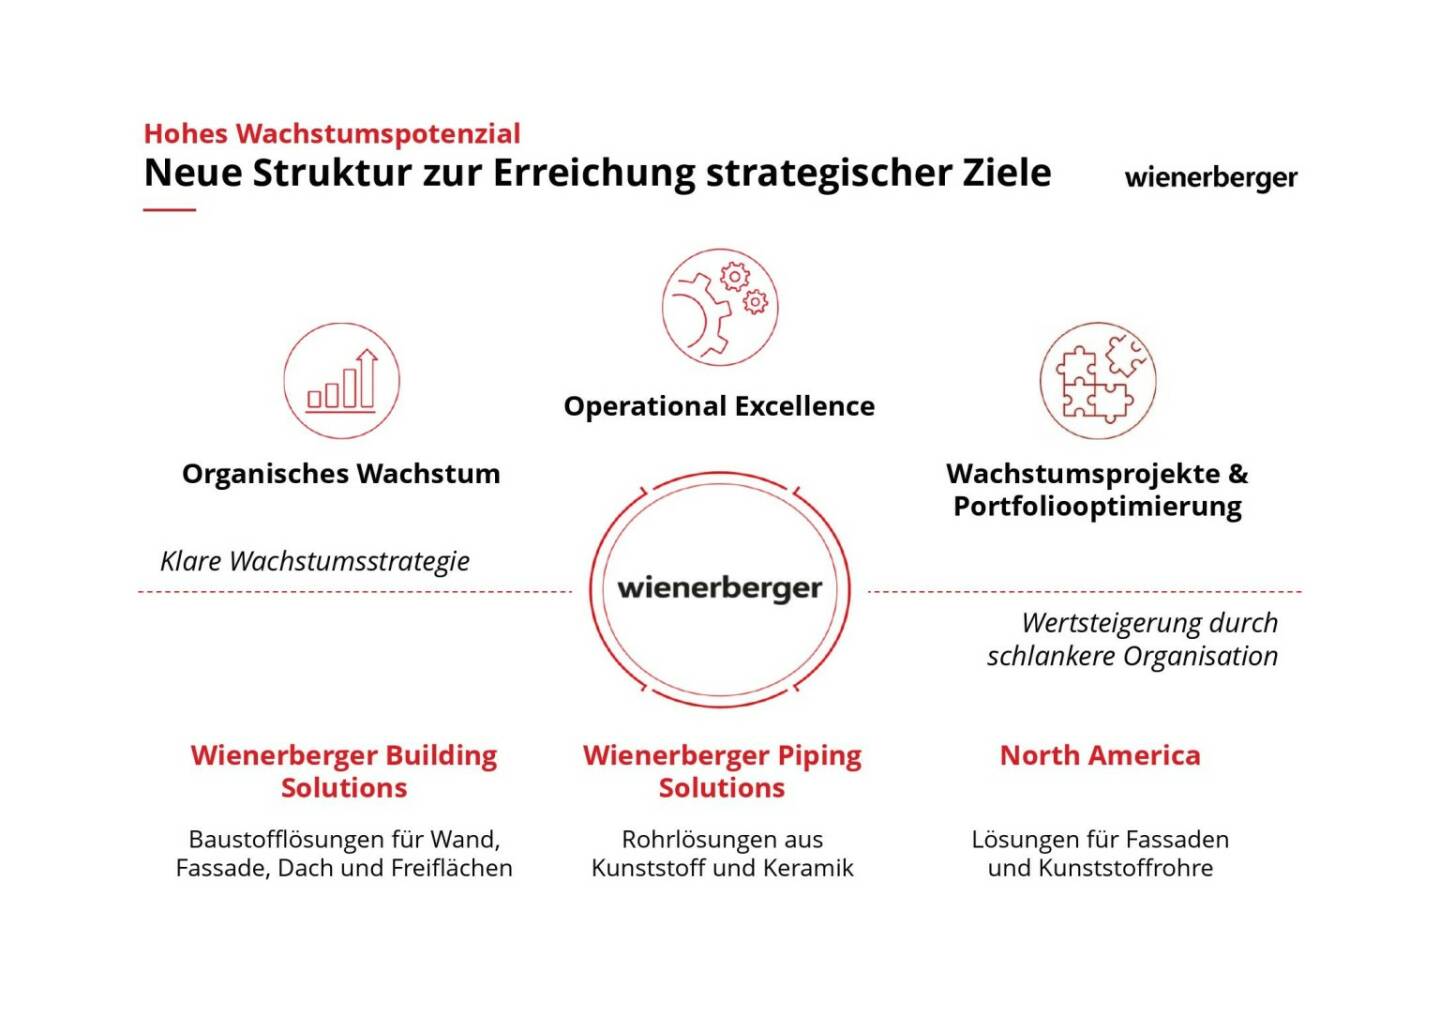 Wienerberger - Neue Struktur zur Erreichung strategischer Ziele